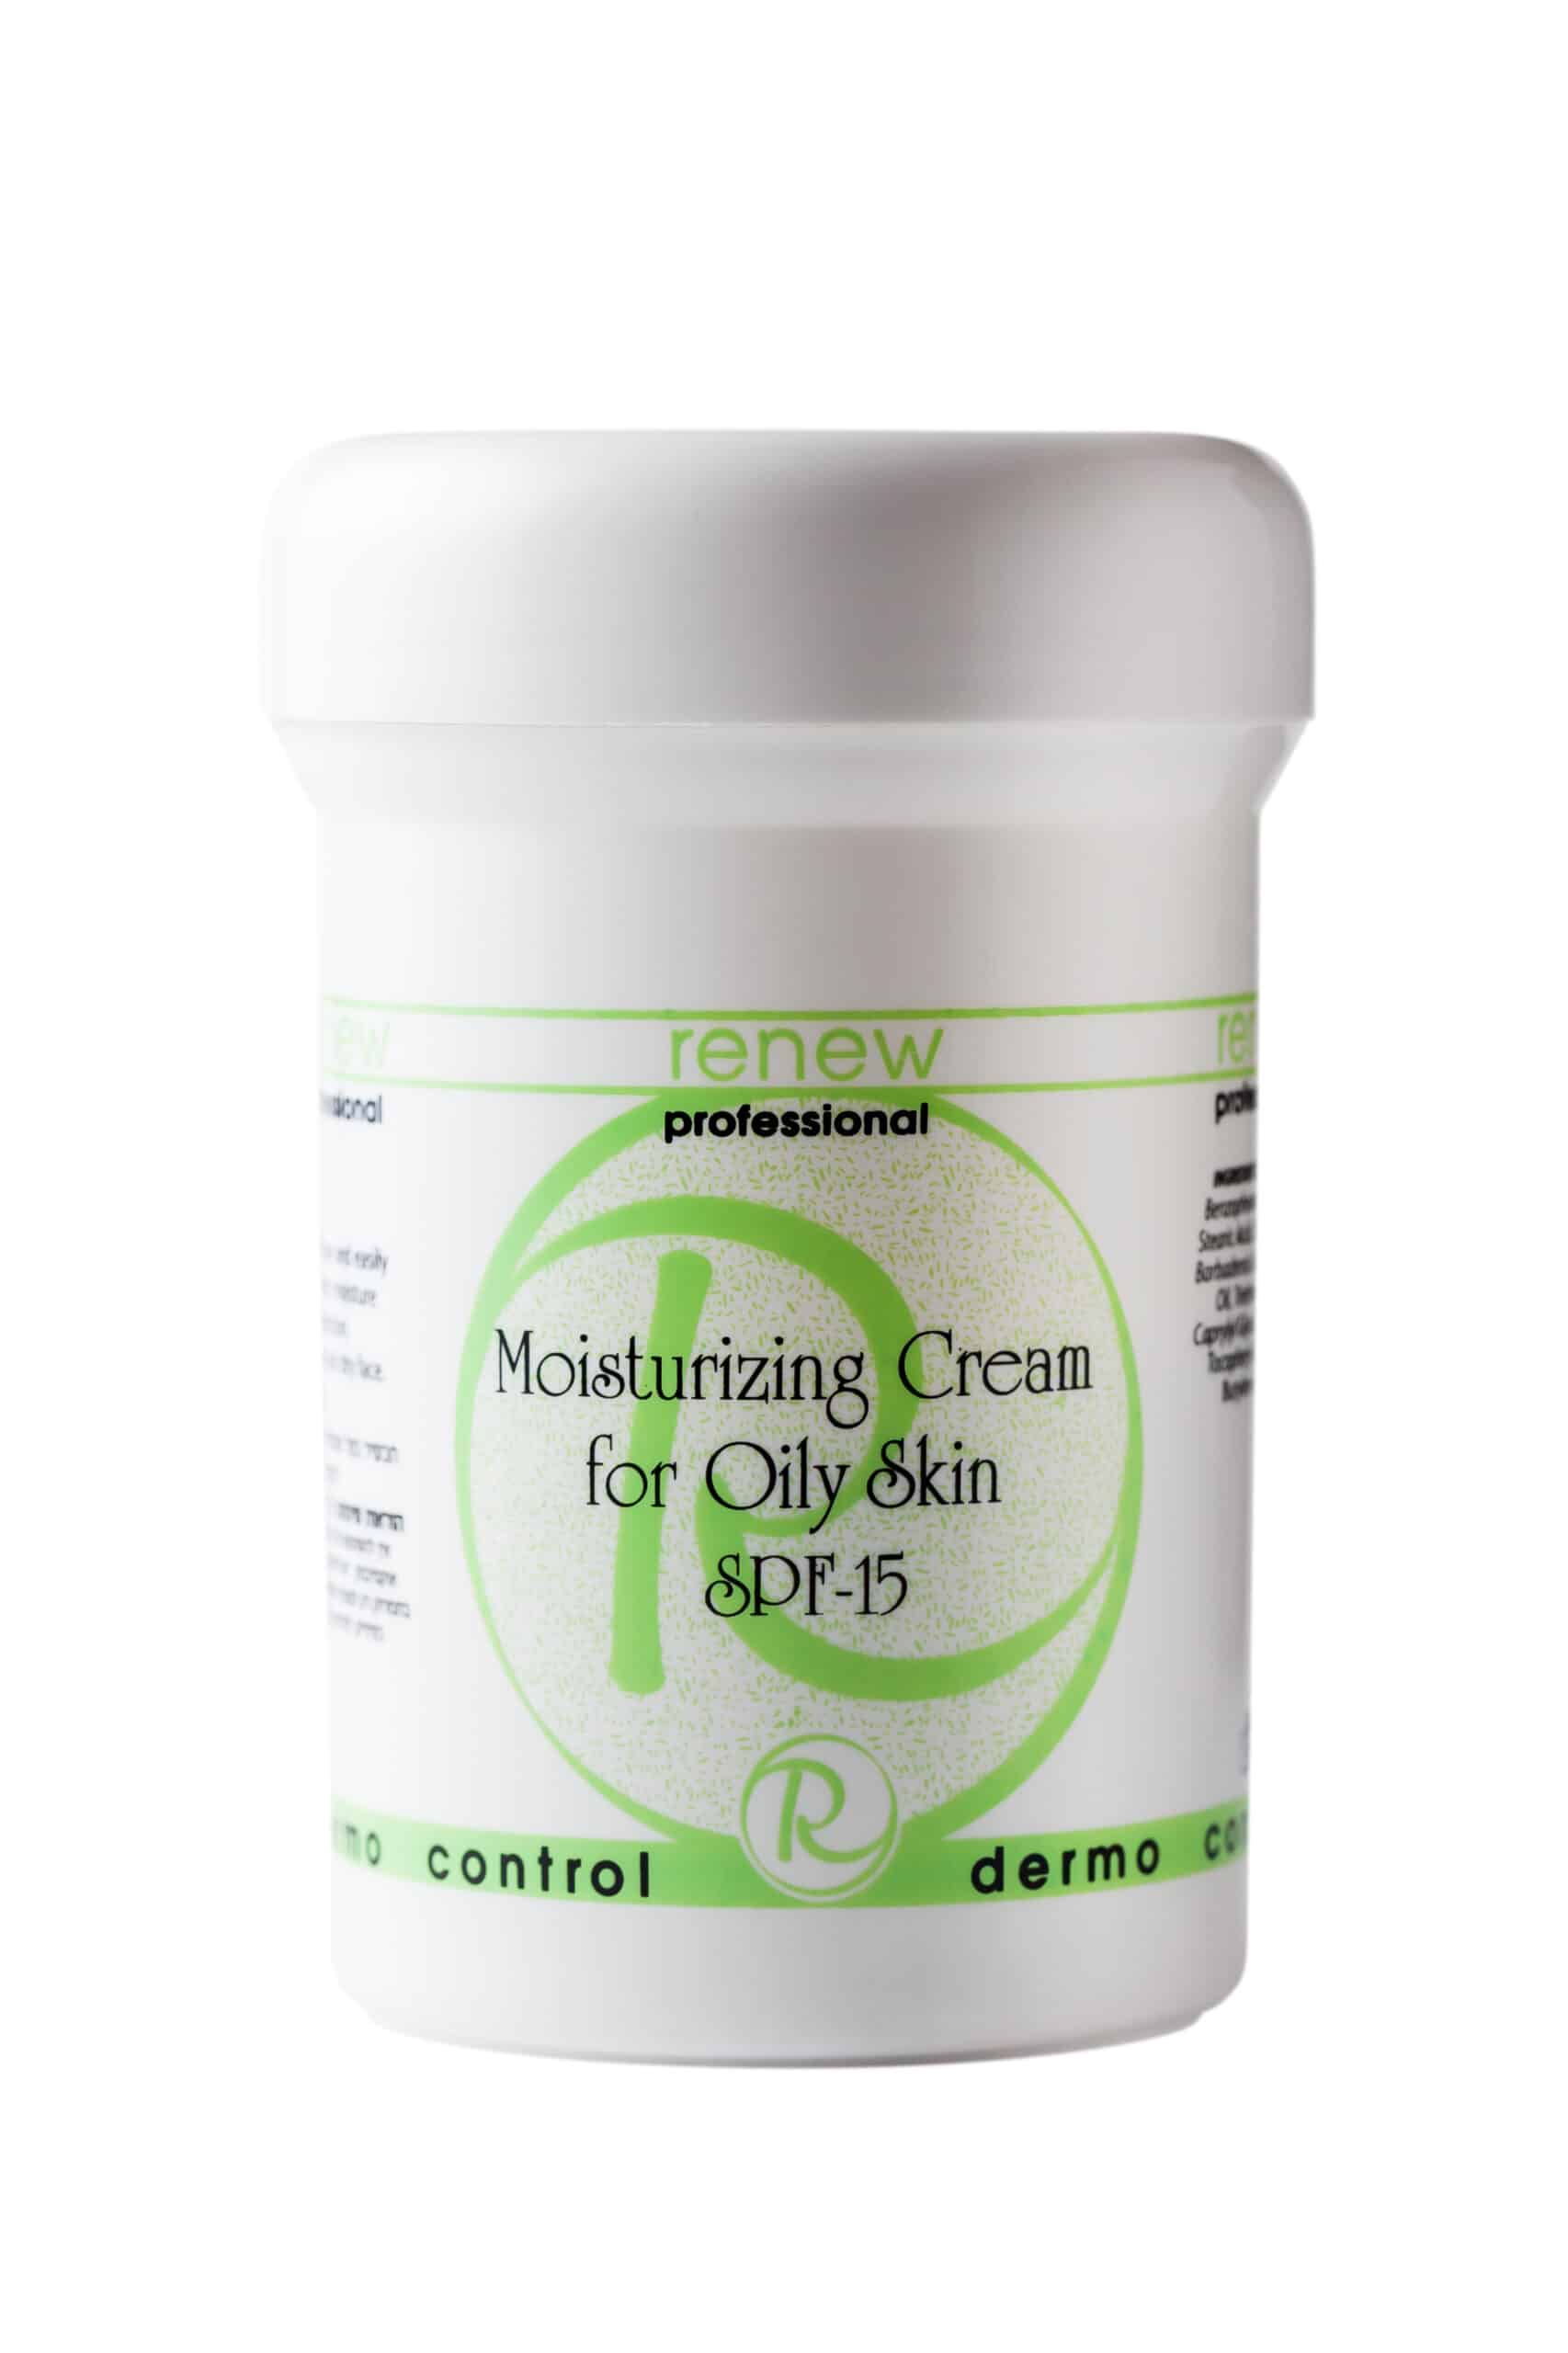 Moisturizing cream for oily skin spf 15 250 ml